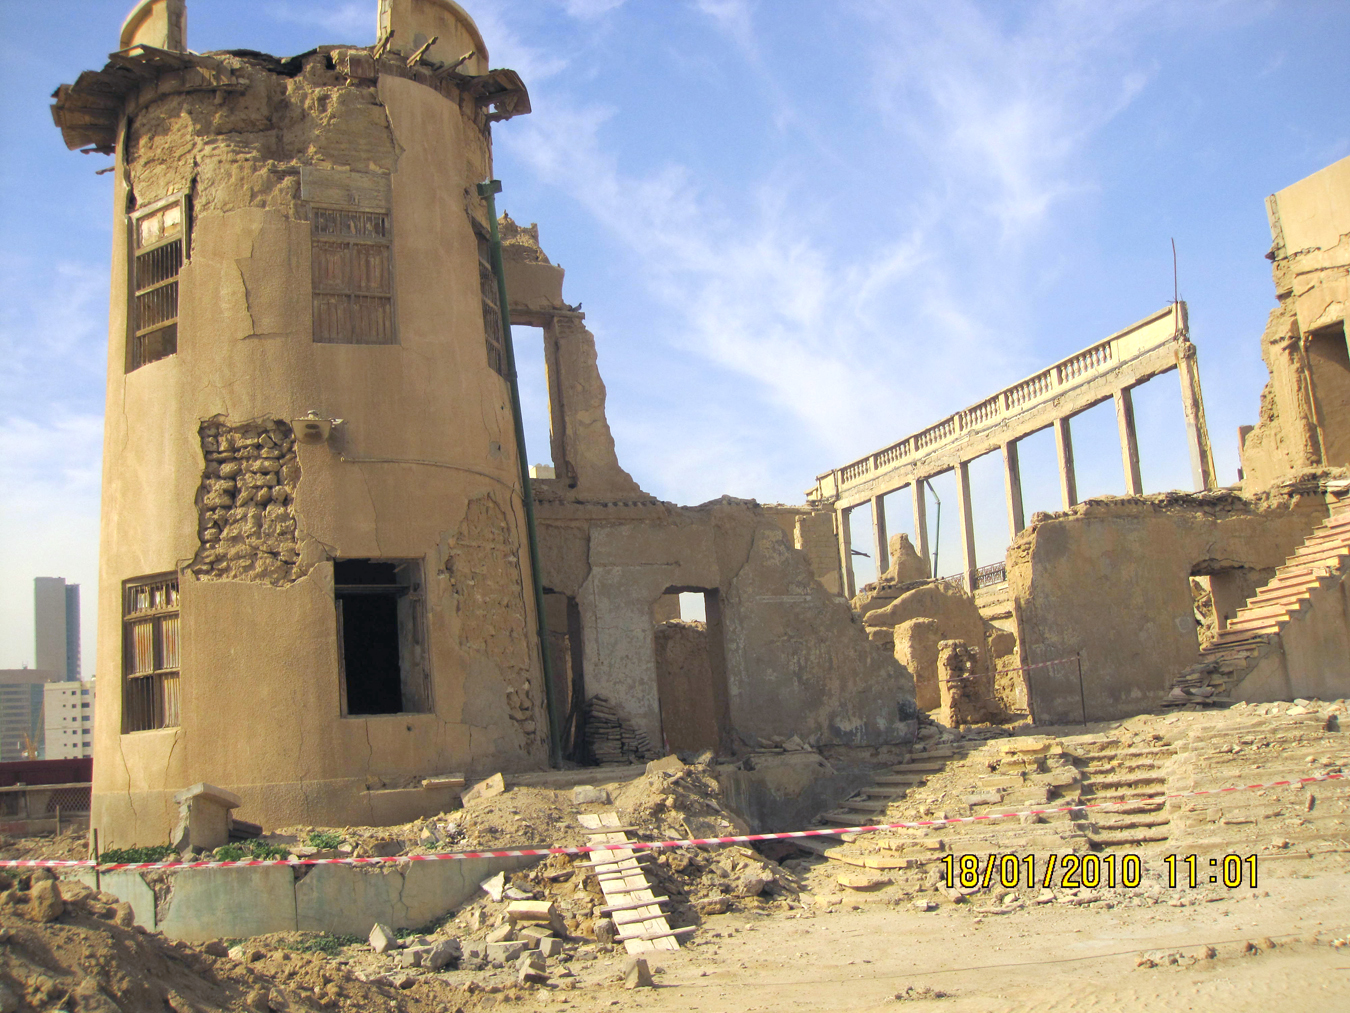 جانب من العمل على اعادة تأهيل ديوان وقصر الشيخ خزعل الواقعين في منطقة دسمان